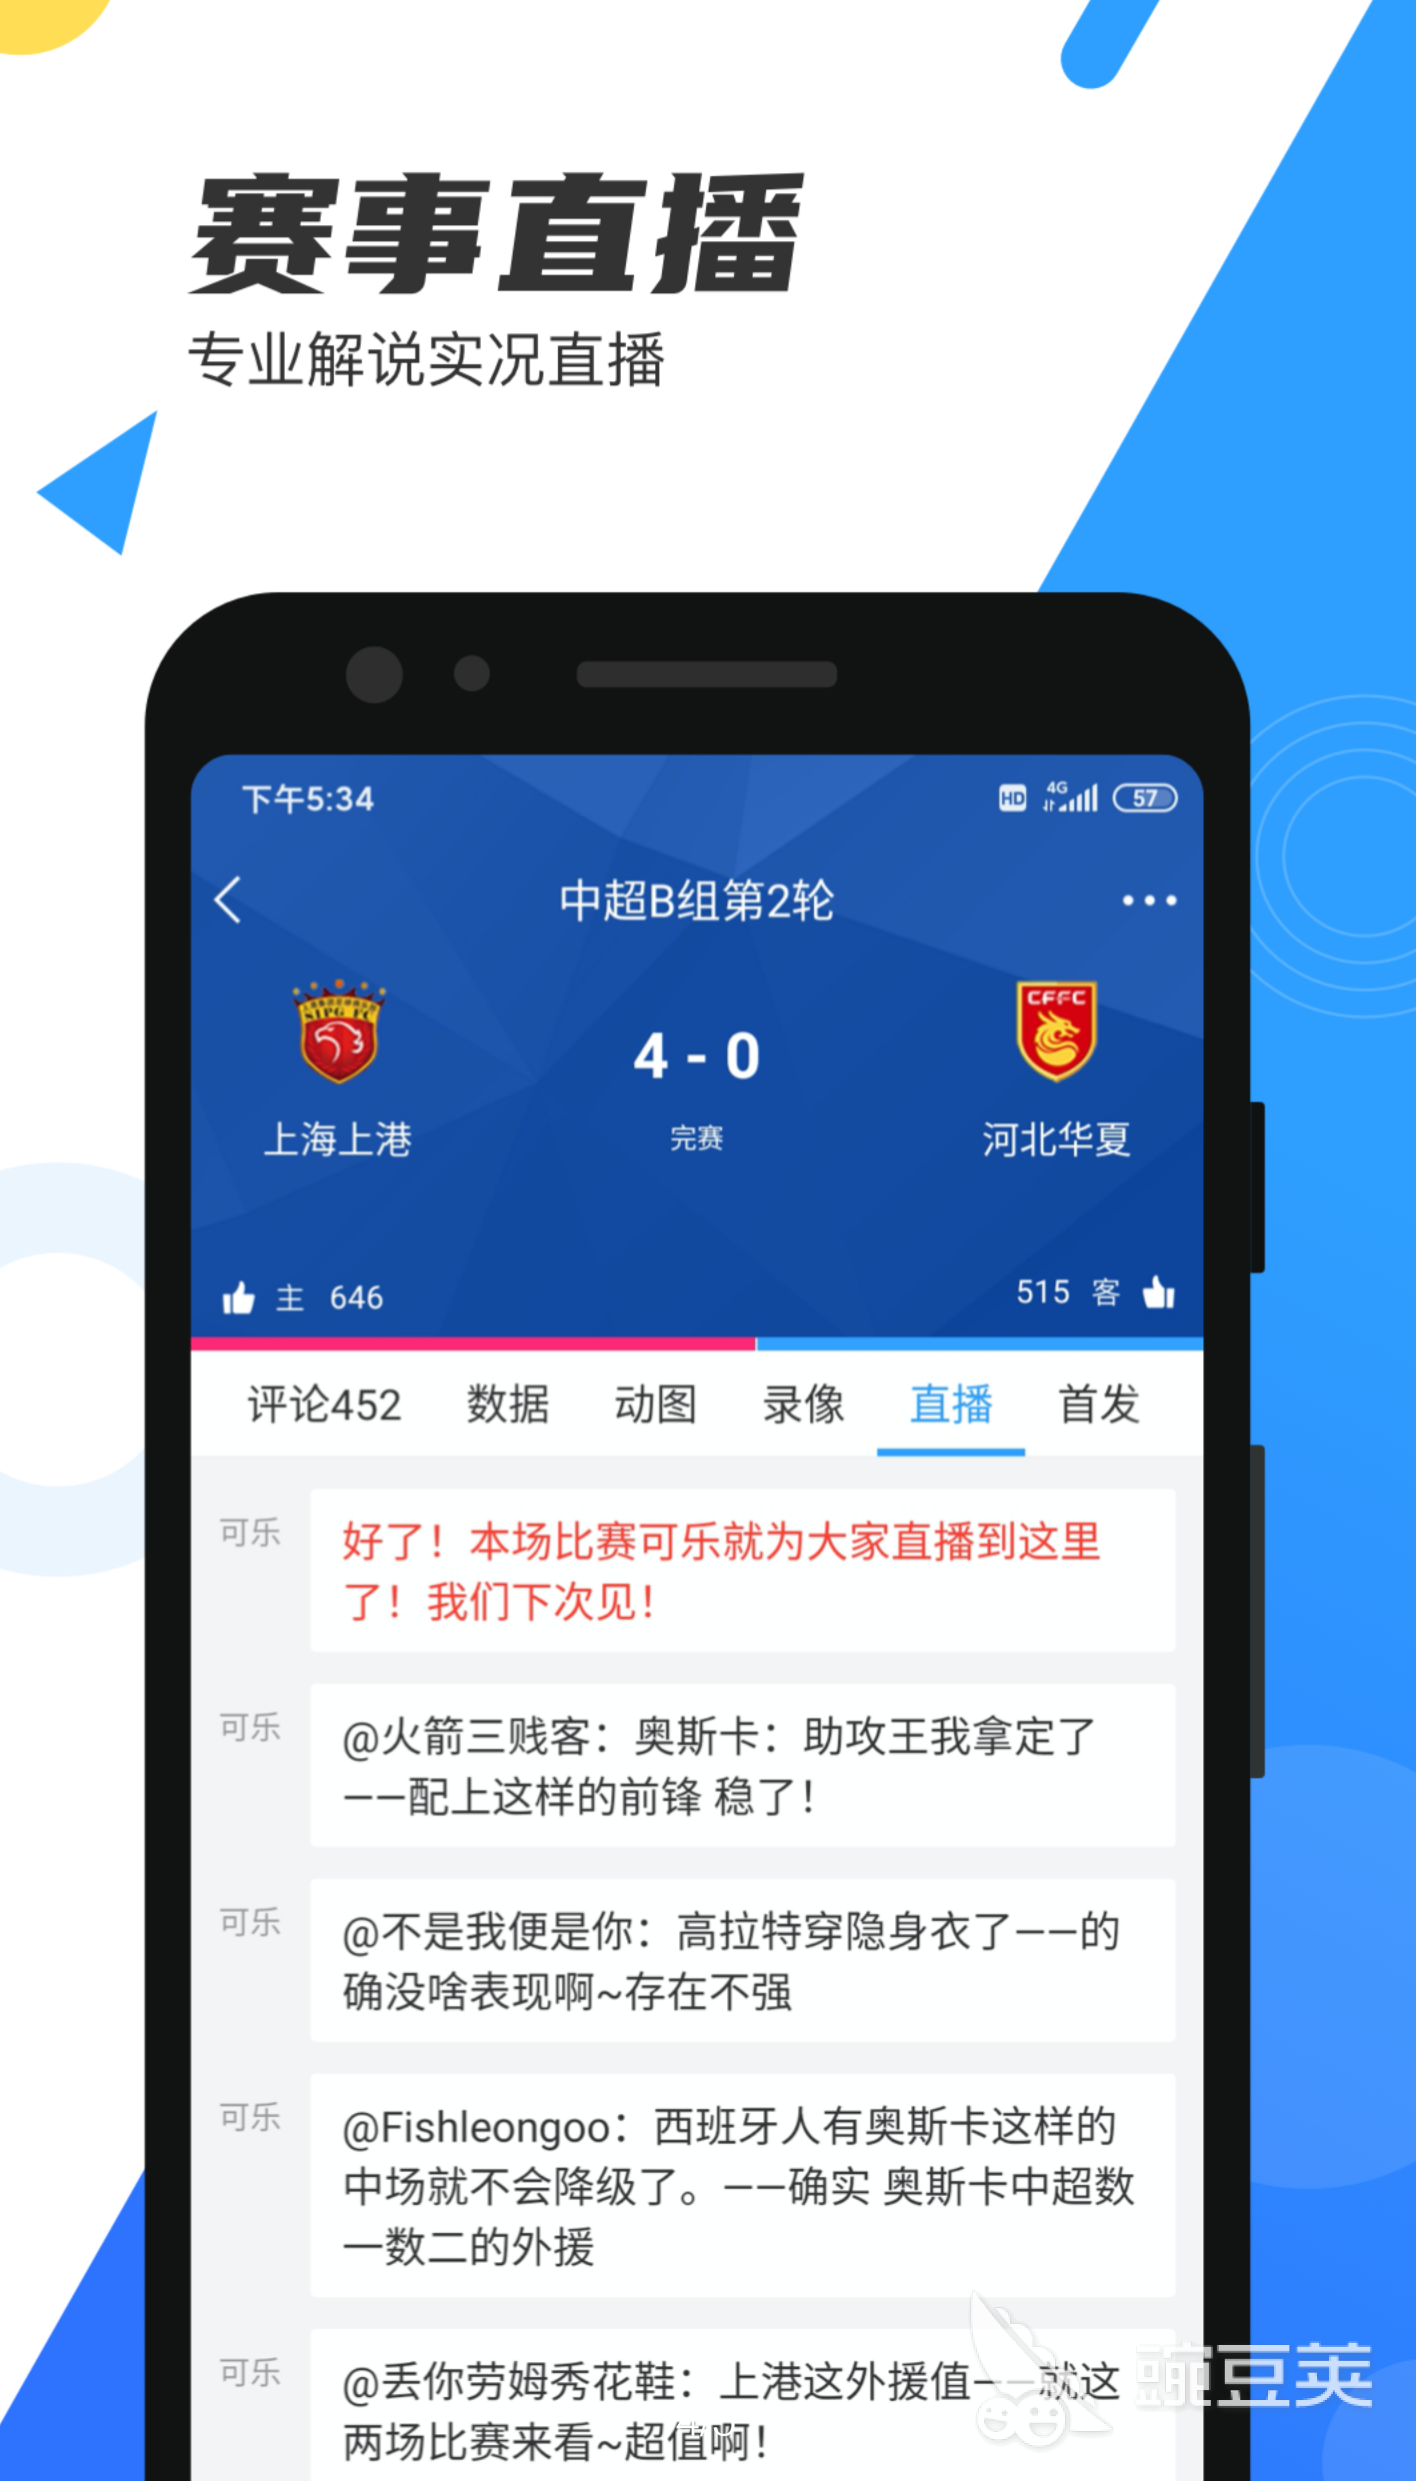 足球比赛免费直播app有哪些2022 足球比赛免费直播app排行榜